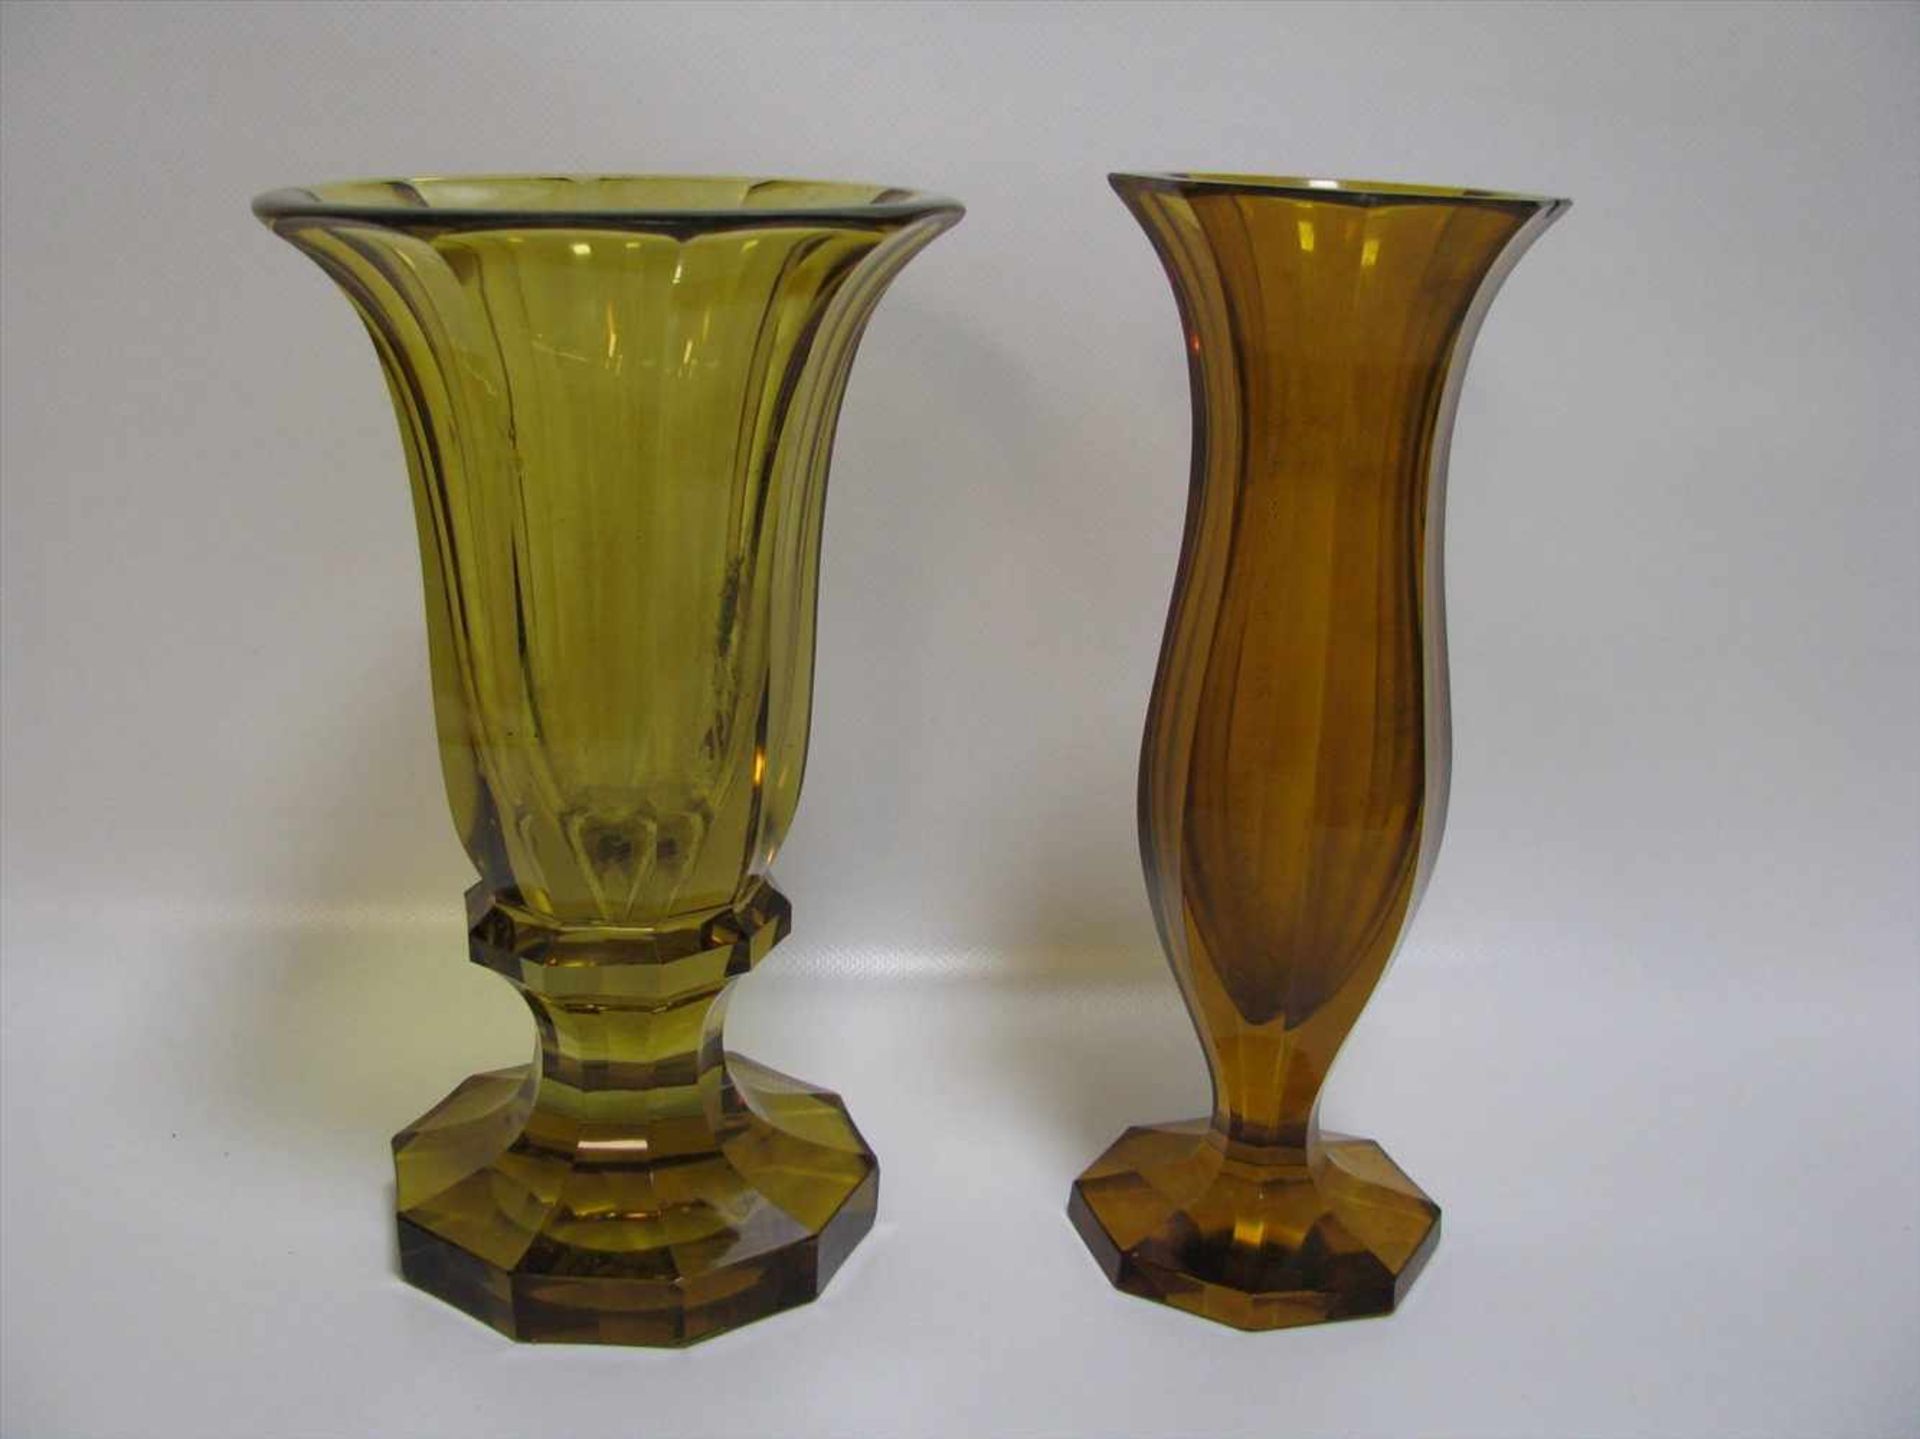 2 Vasen, wohl Österreich, bernsteinfarbenes Bleikristall, kantig beschliffen, best., h 23,1/24 cm, d